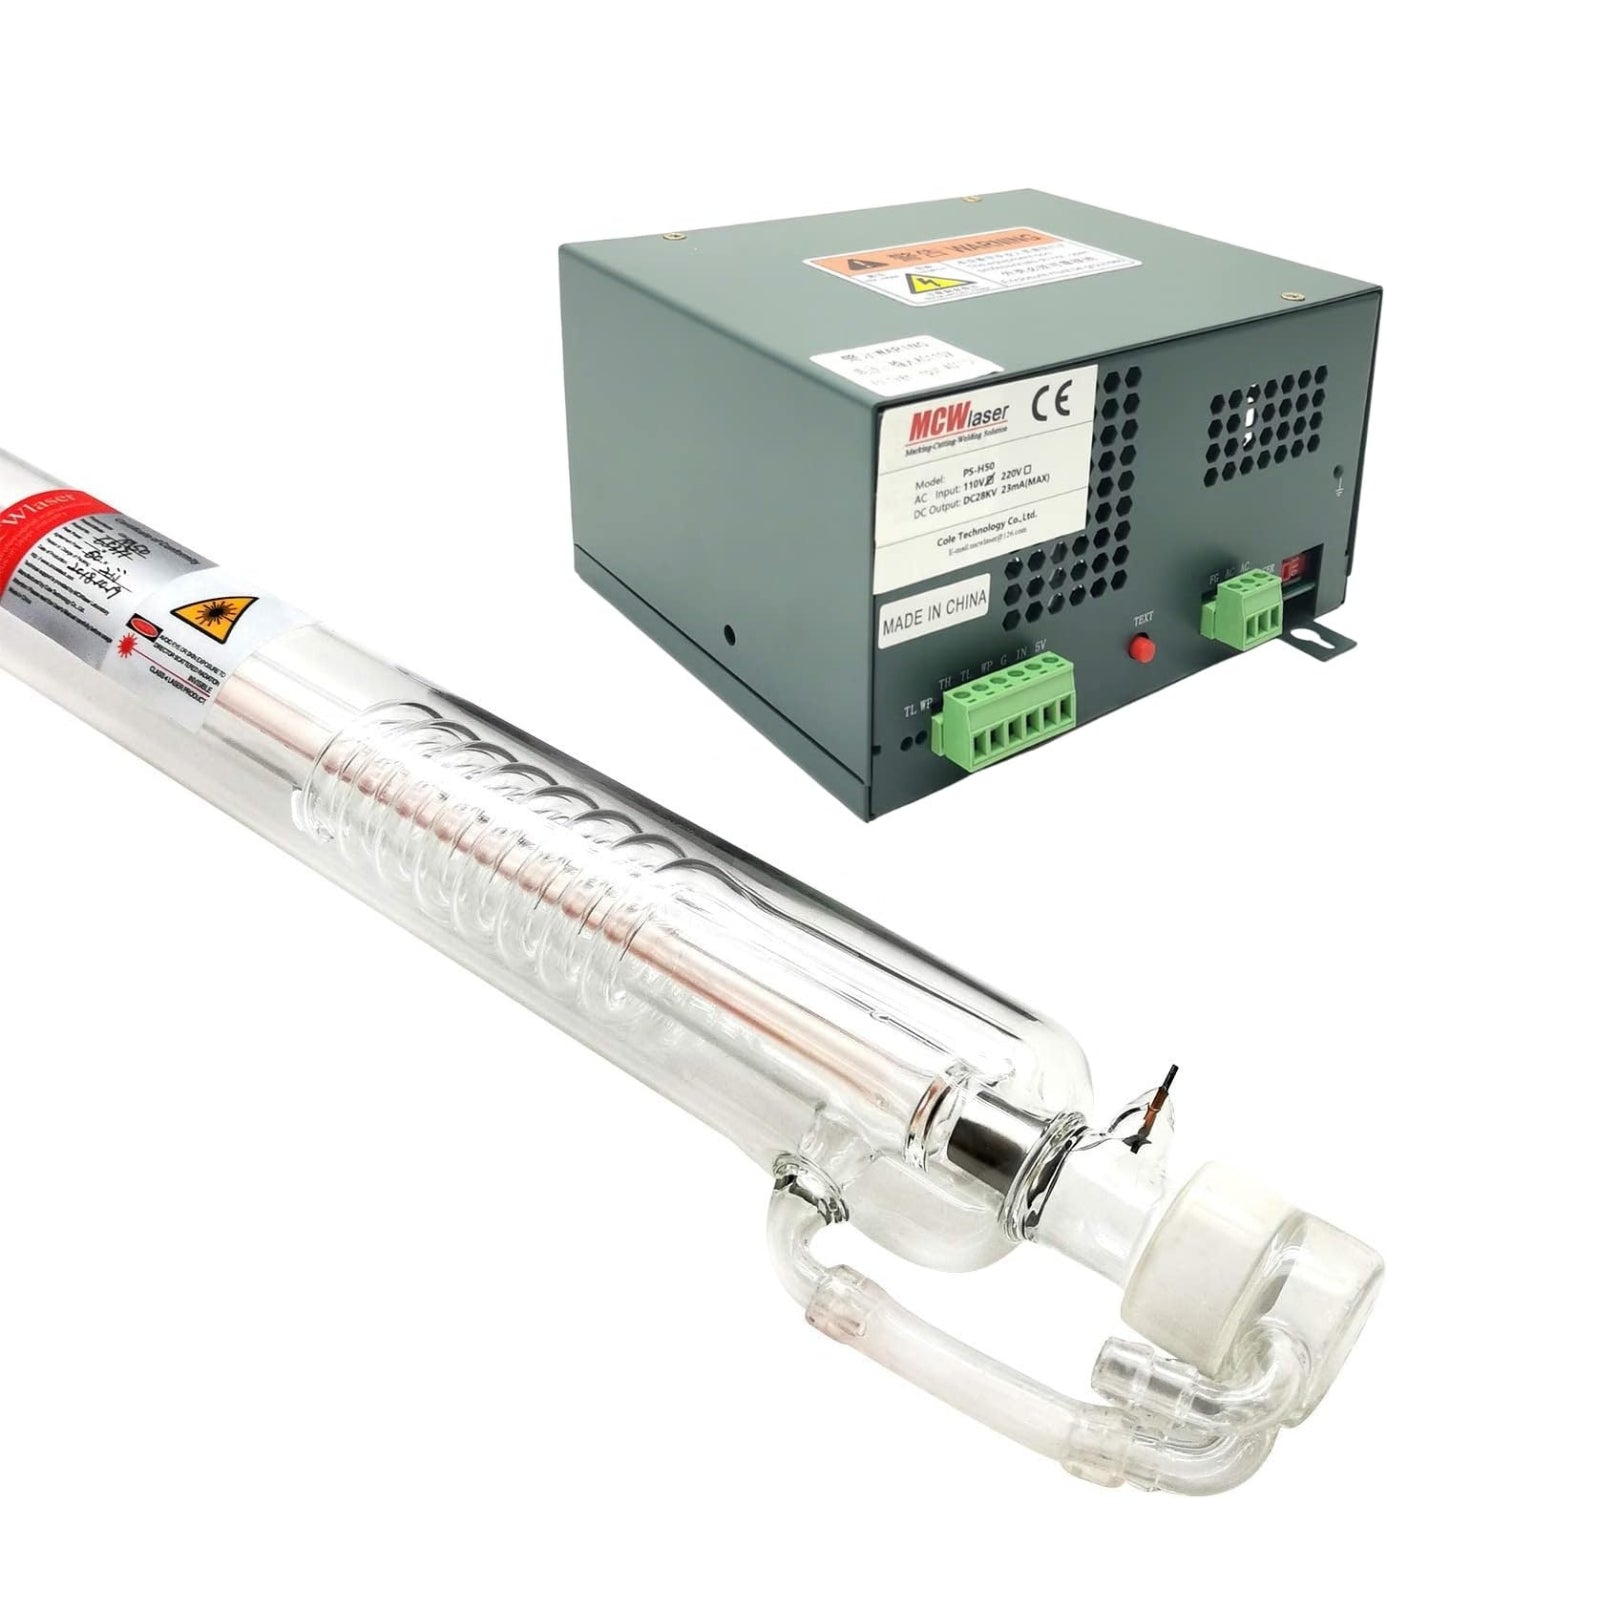 MCWlaser 80 W (Spitze 100 W), 1250 mm CO2-Laserröhre + 80 W 110 V/220 V Netzteil mit LED-Anzeige 